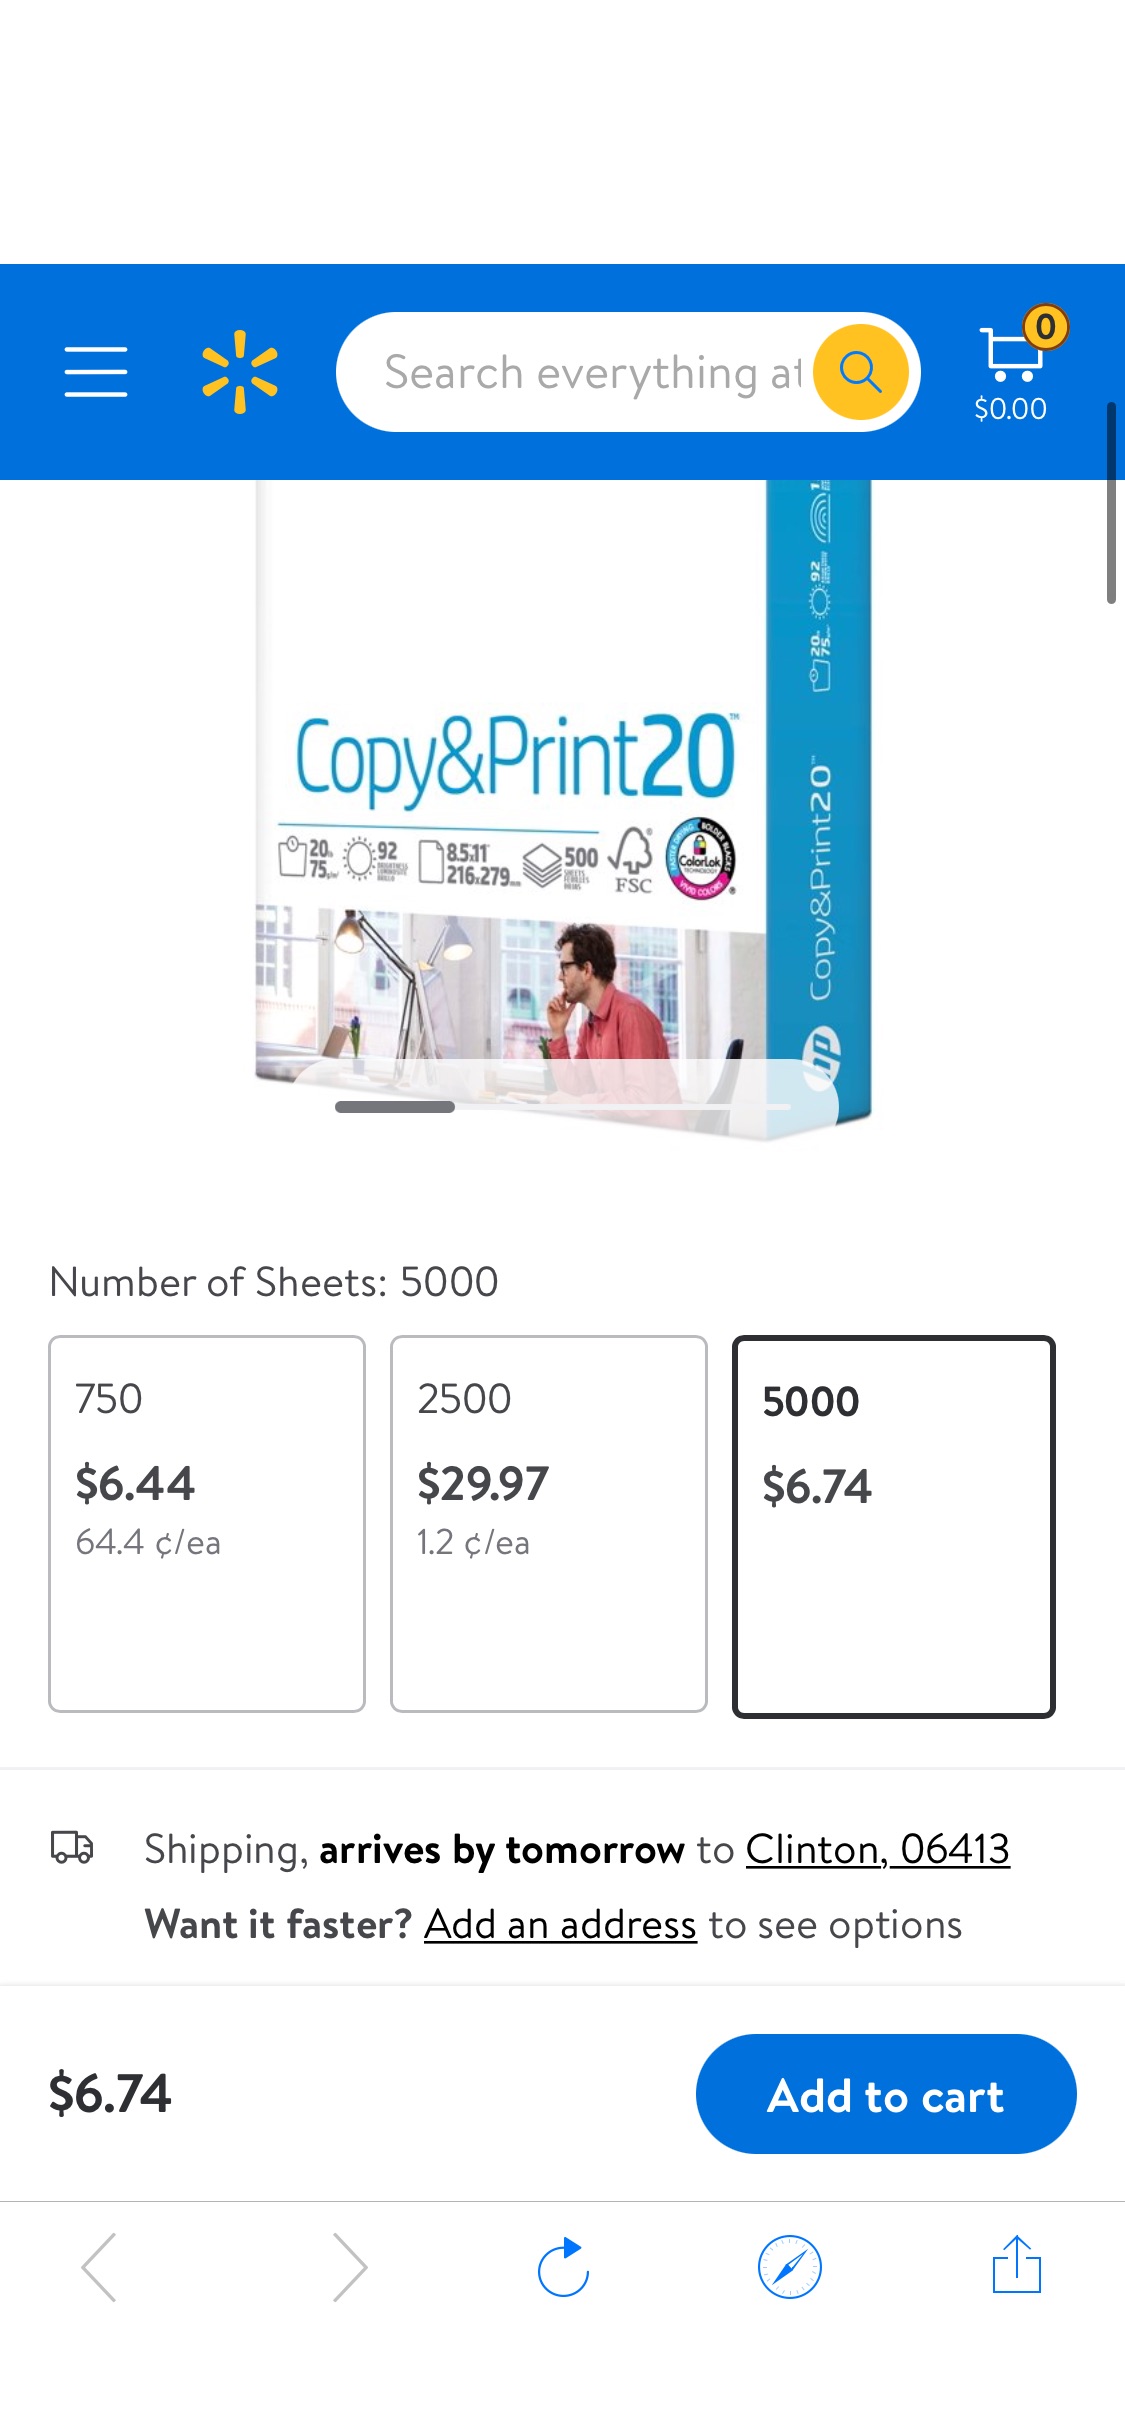 HP Printer Paper - Copy And Print, 20 lb., 8.5" x 11", 500 Sheets, 1 Ream - Walmart.com疑似bug 价！10包打印纸只收1包价格！